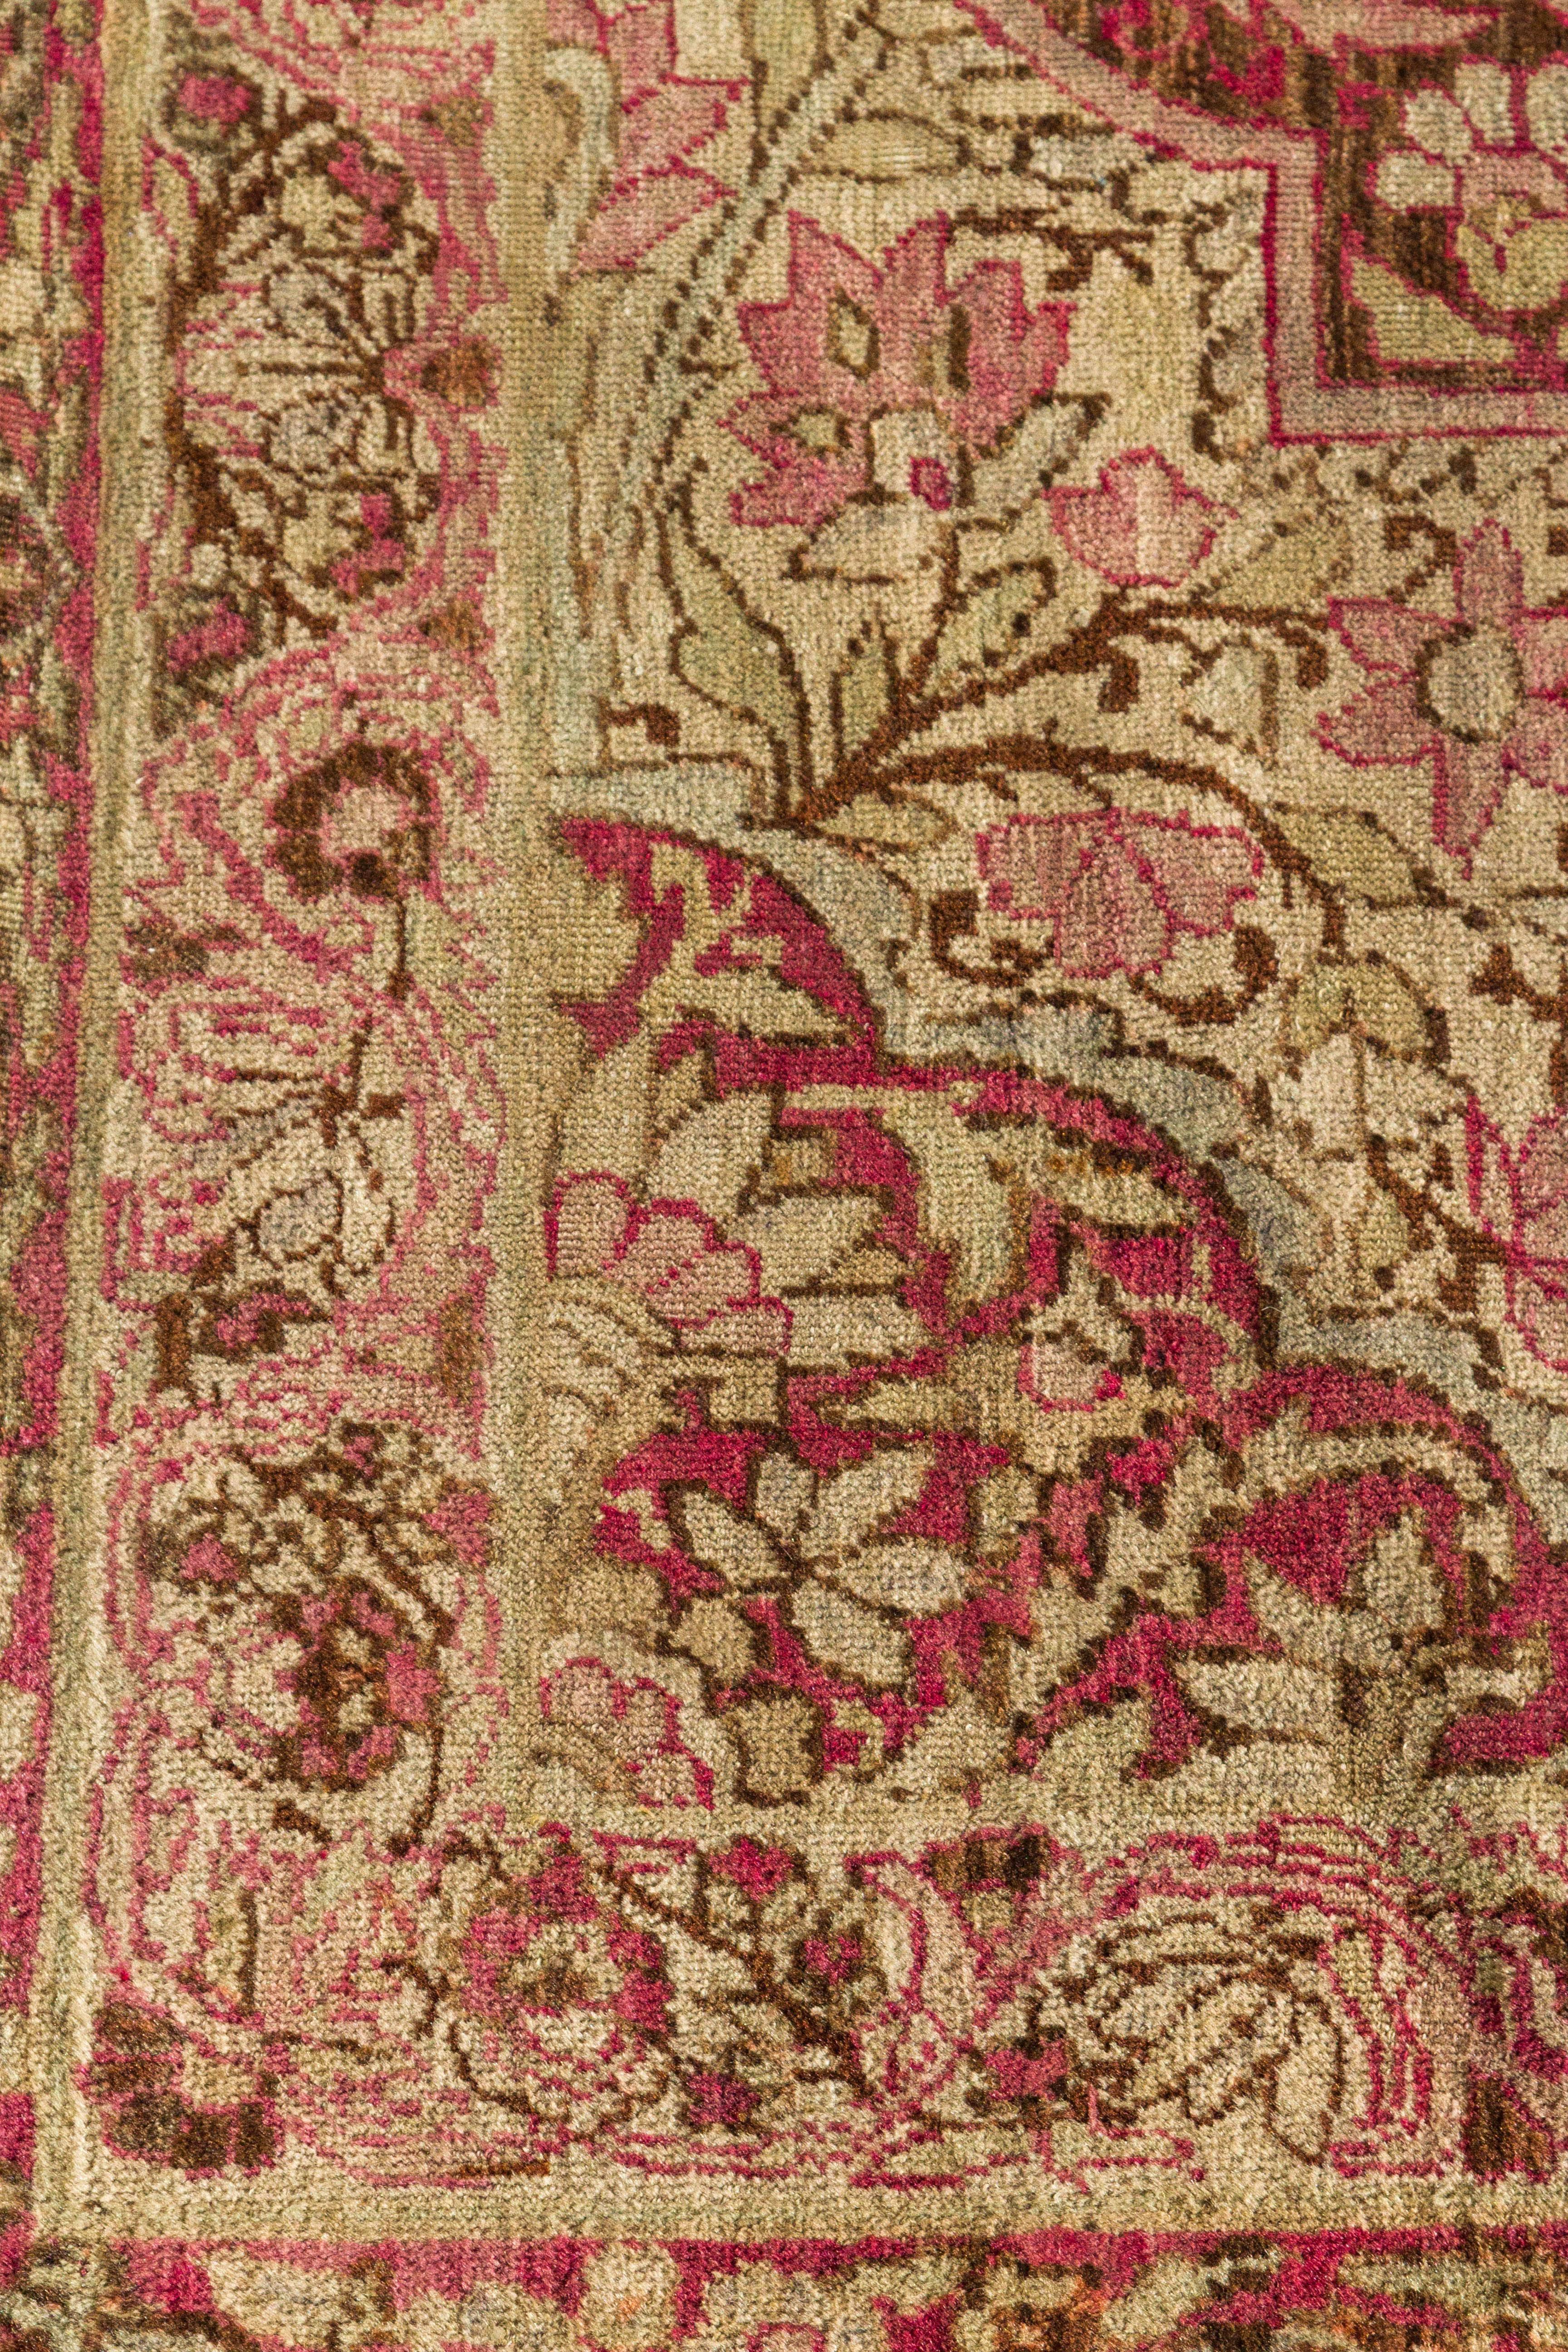 Antique Lavar Kerman rug
Measurement: 12'8